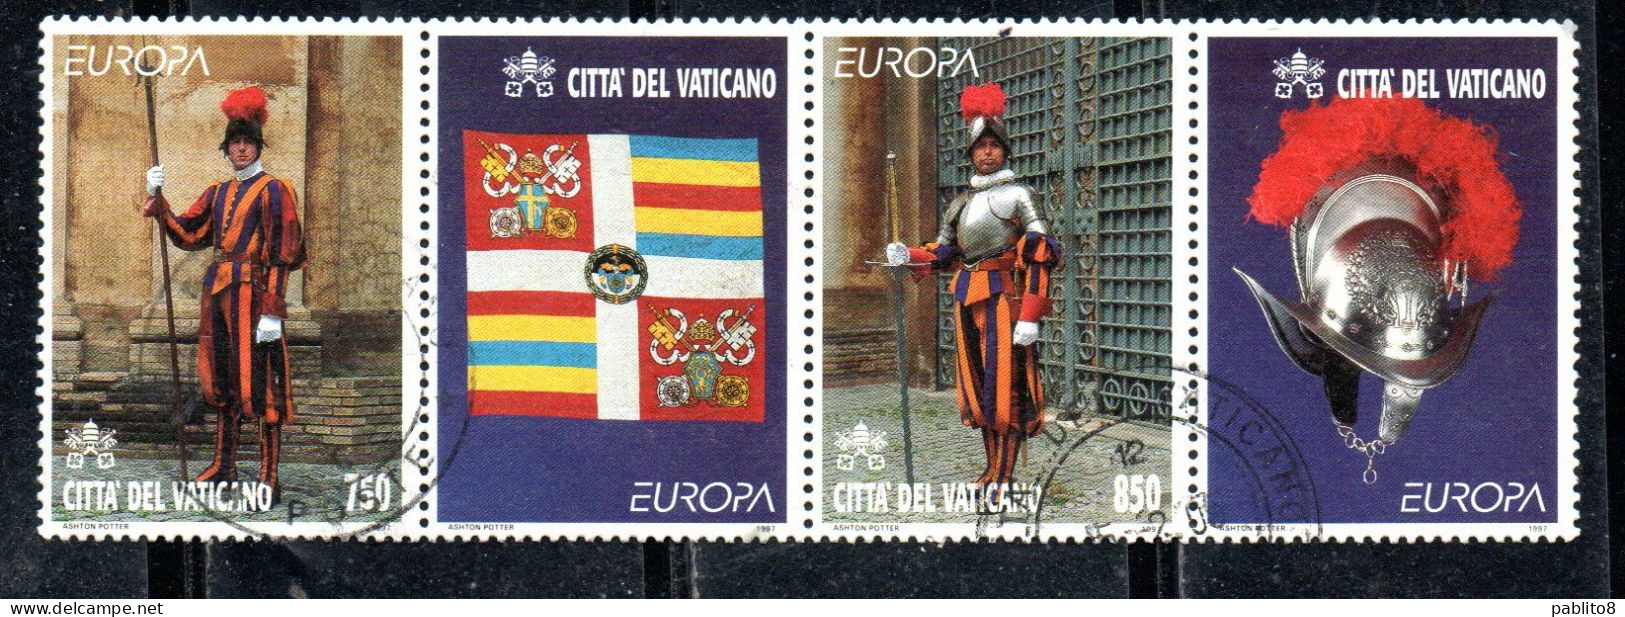 CITTÀ DEL VATICANO VATICAN VATIKAN 1997 EUROPA CEPT STORIA E LEGGENDE STRISCIA SERIE STRIP SET USATA USED OBLITERE' - Used Stamps